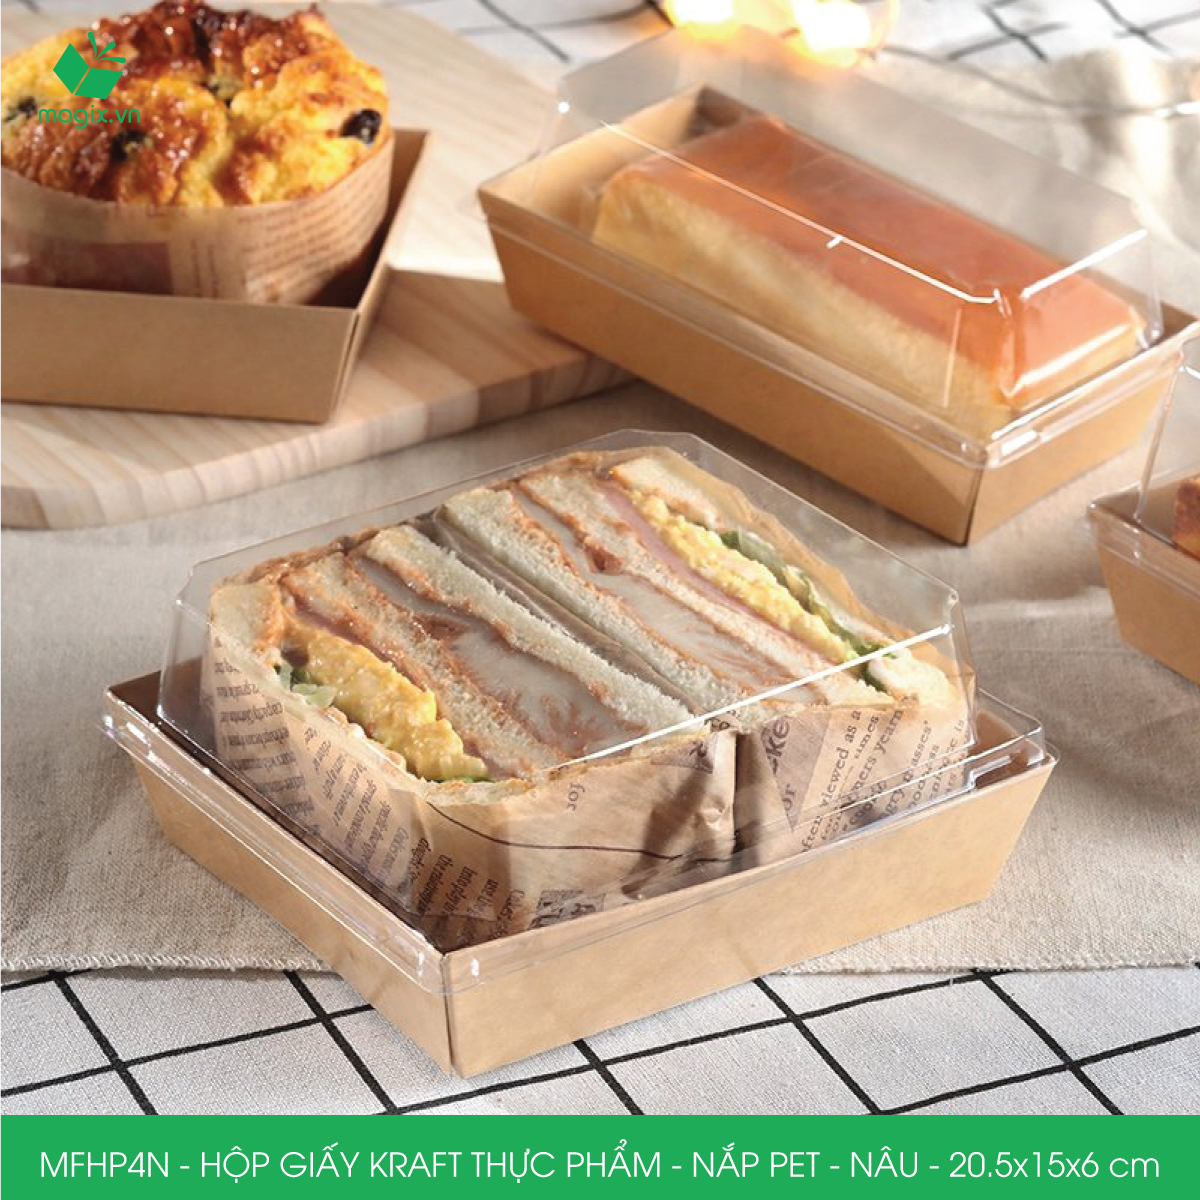 MFHP4N - 20.5x15x6 cm - 50 hộp giấy kraft thực phẩm màu nâu nắp Pet, hộp giấy chữ nhật đựng thức ăn, hộp bánh nắp trong